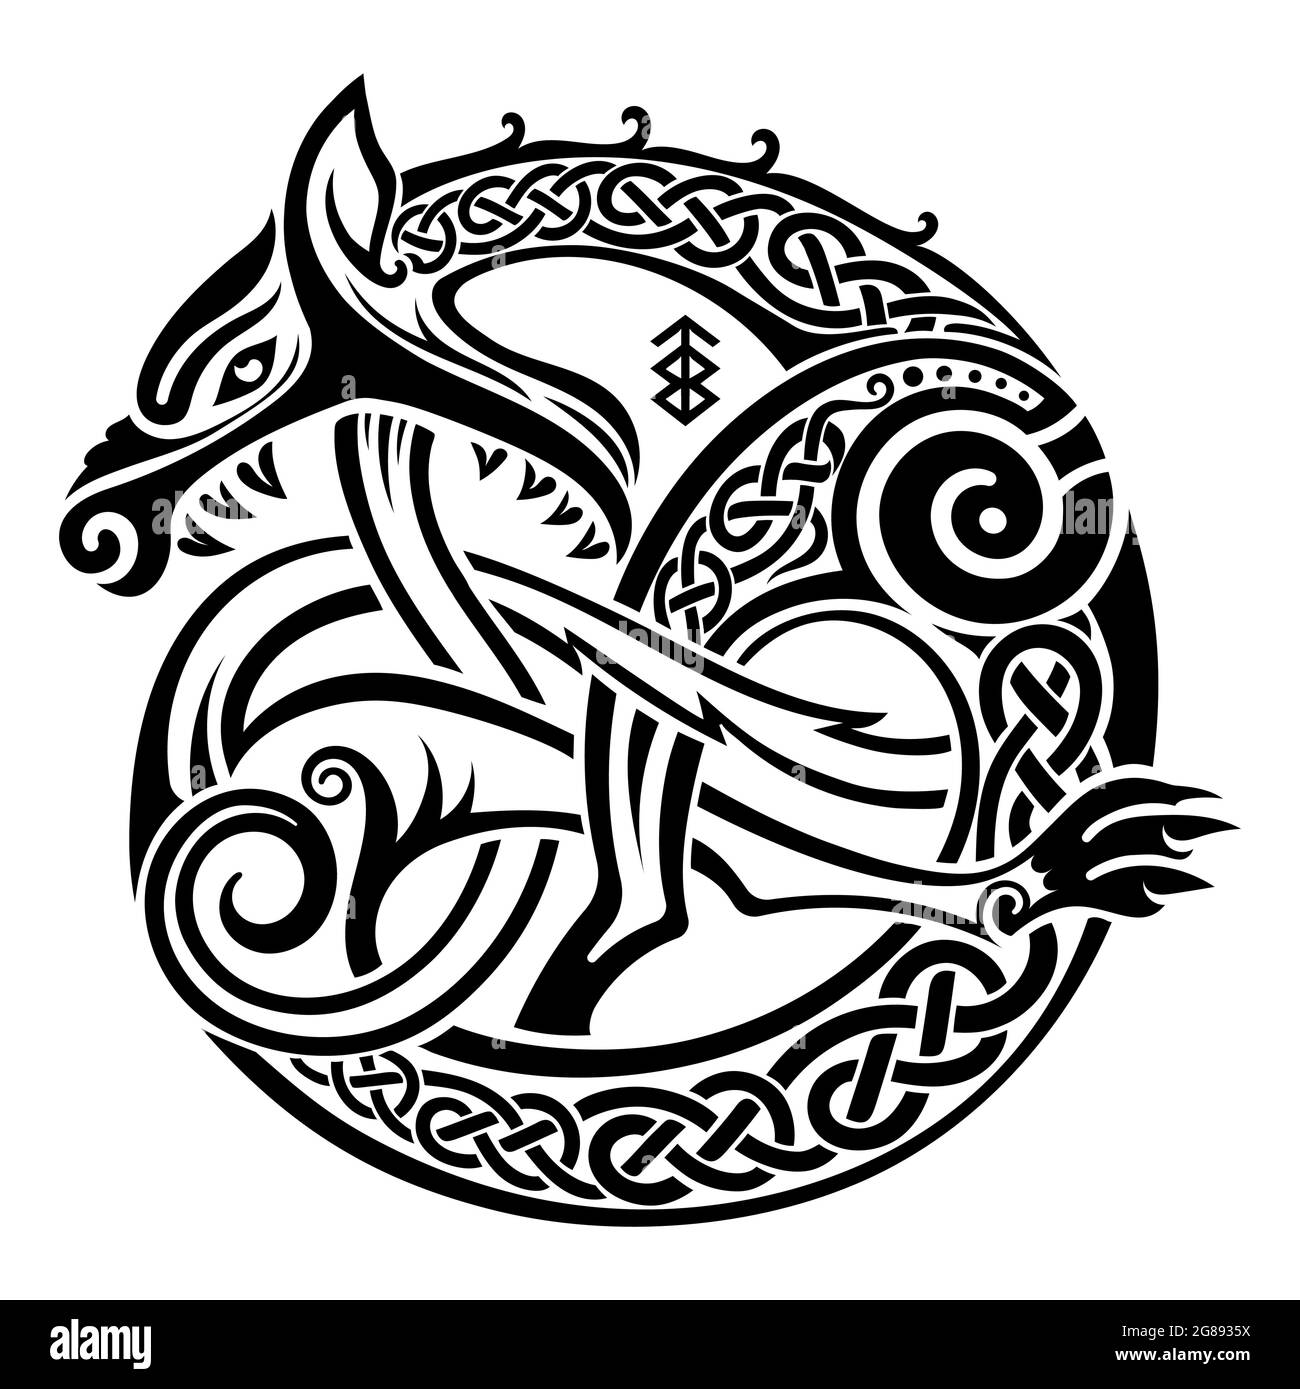 Style scandinave viking. Illustration d'une bête mythologique - Fenir Wolf dans le style celtique scandinave Illustration de Vecteur